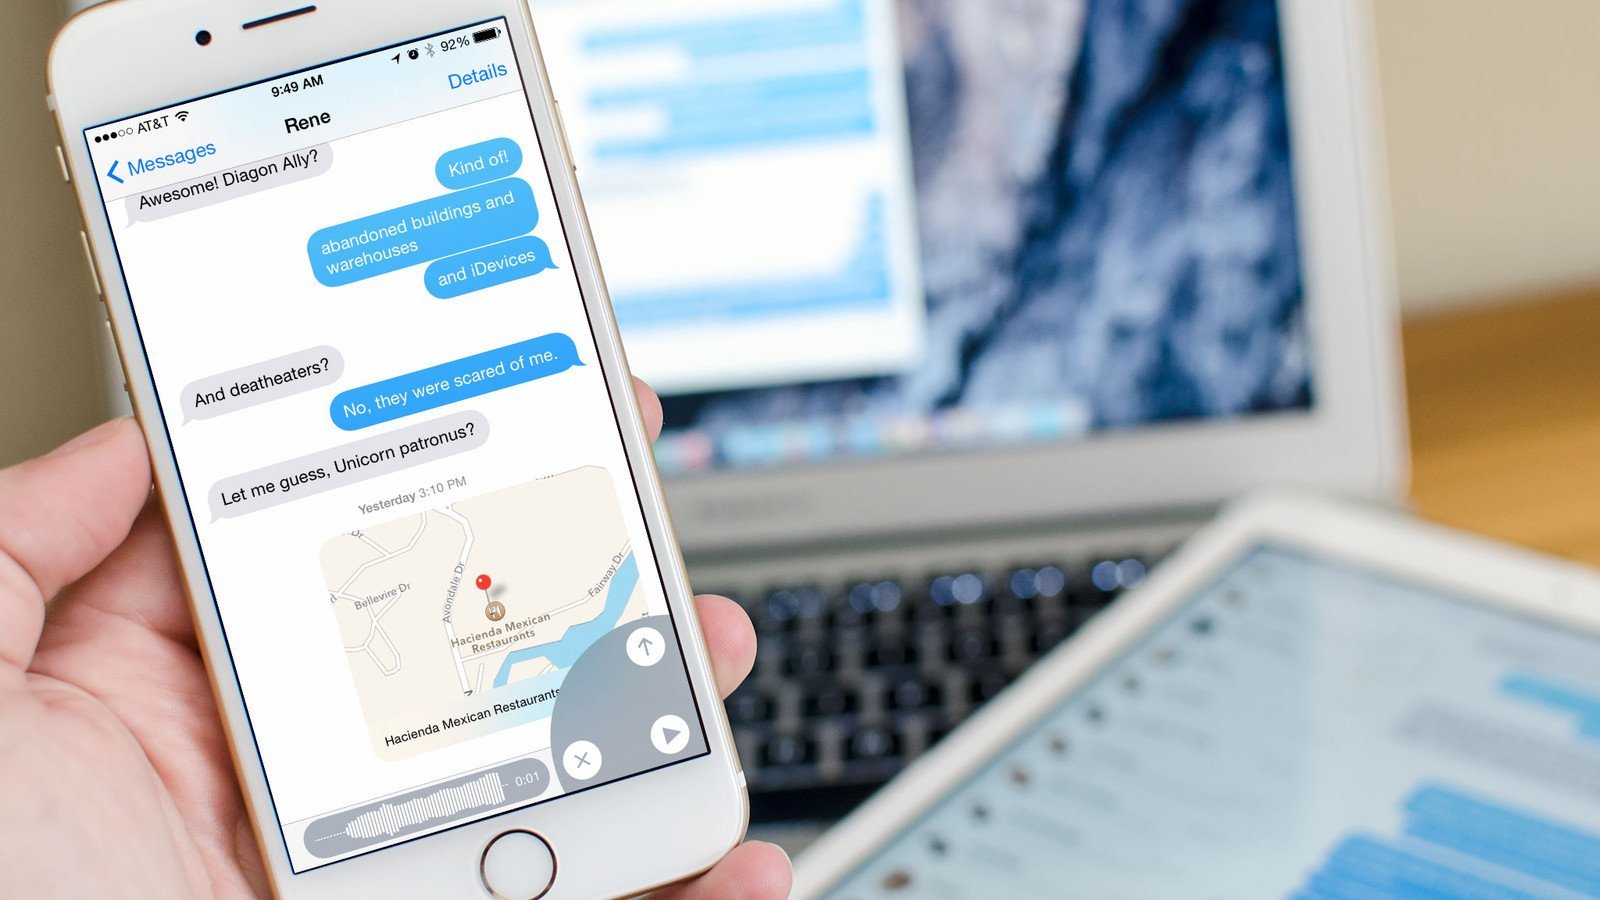 Bật mí một số thao tác tăng tốc độ chat iMessage trên iPhone 6 Plus cũ (Phần 1)